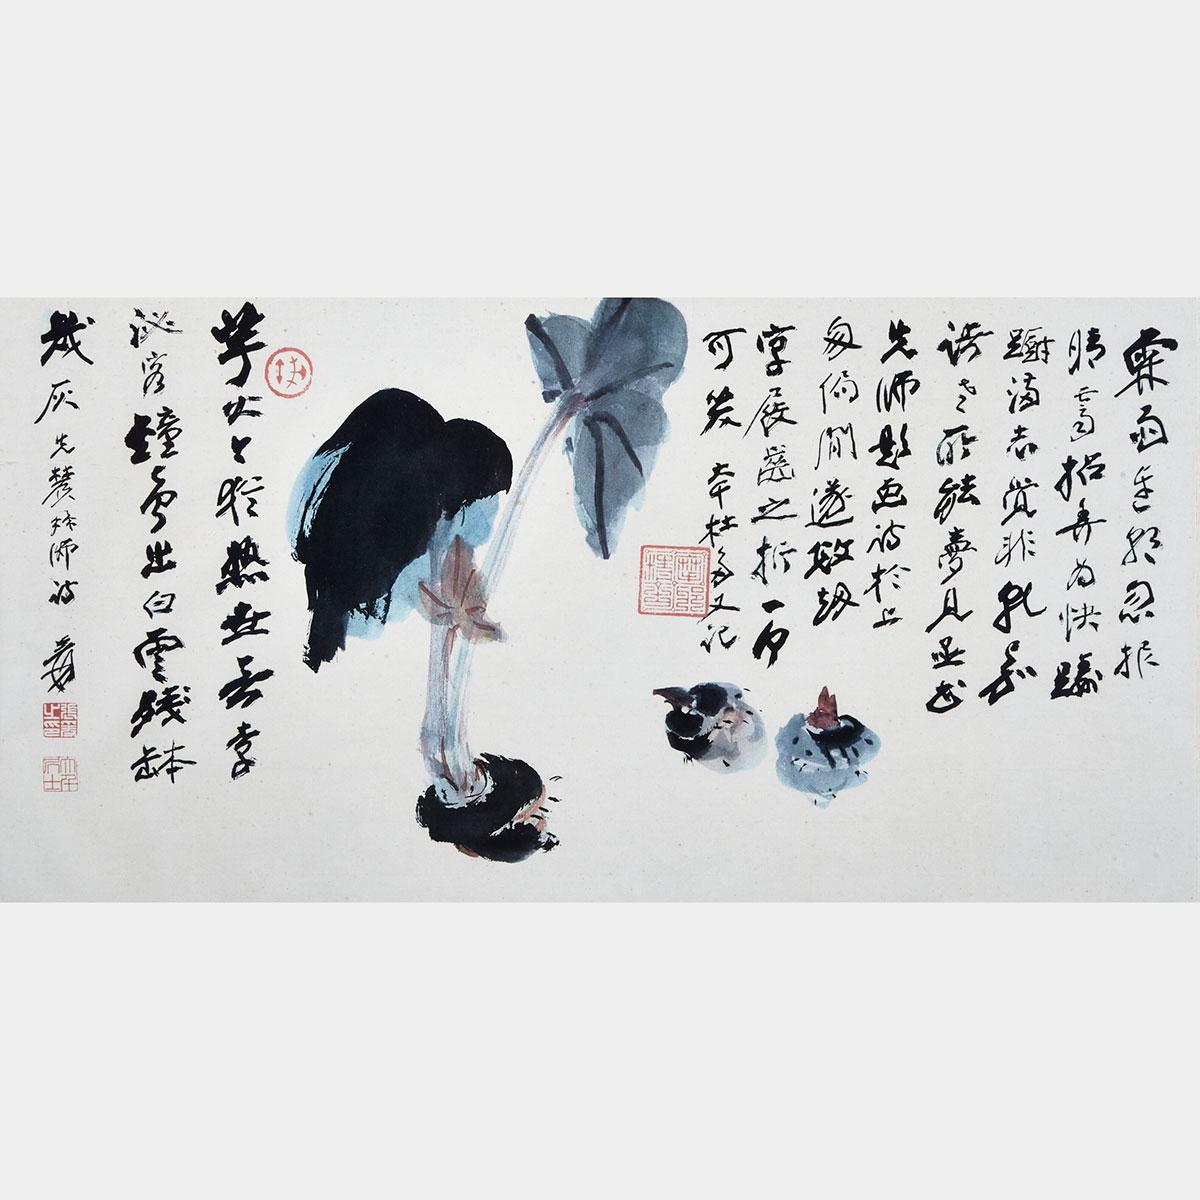 AFTER Zhang Daqian (1899-1983)